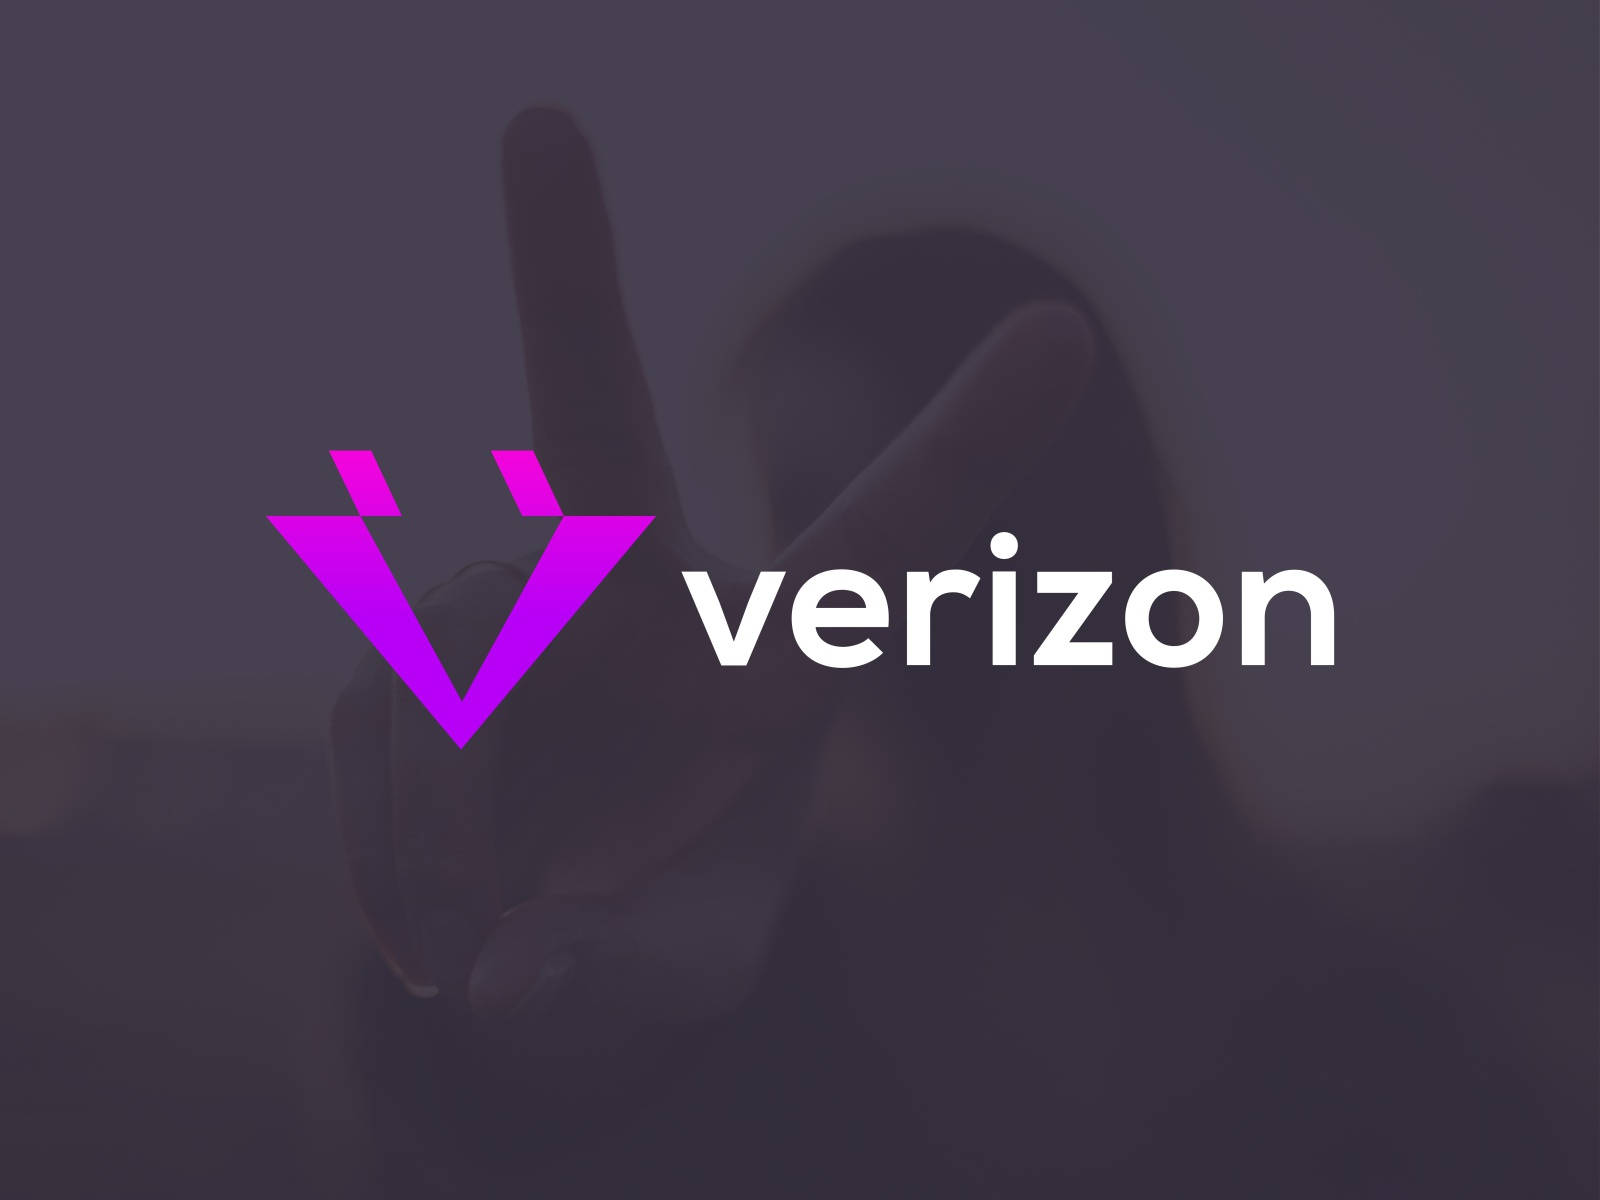 Verizon Purple Design